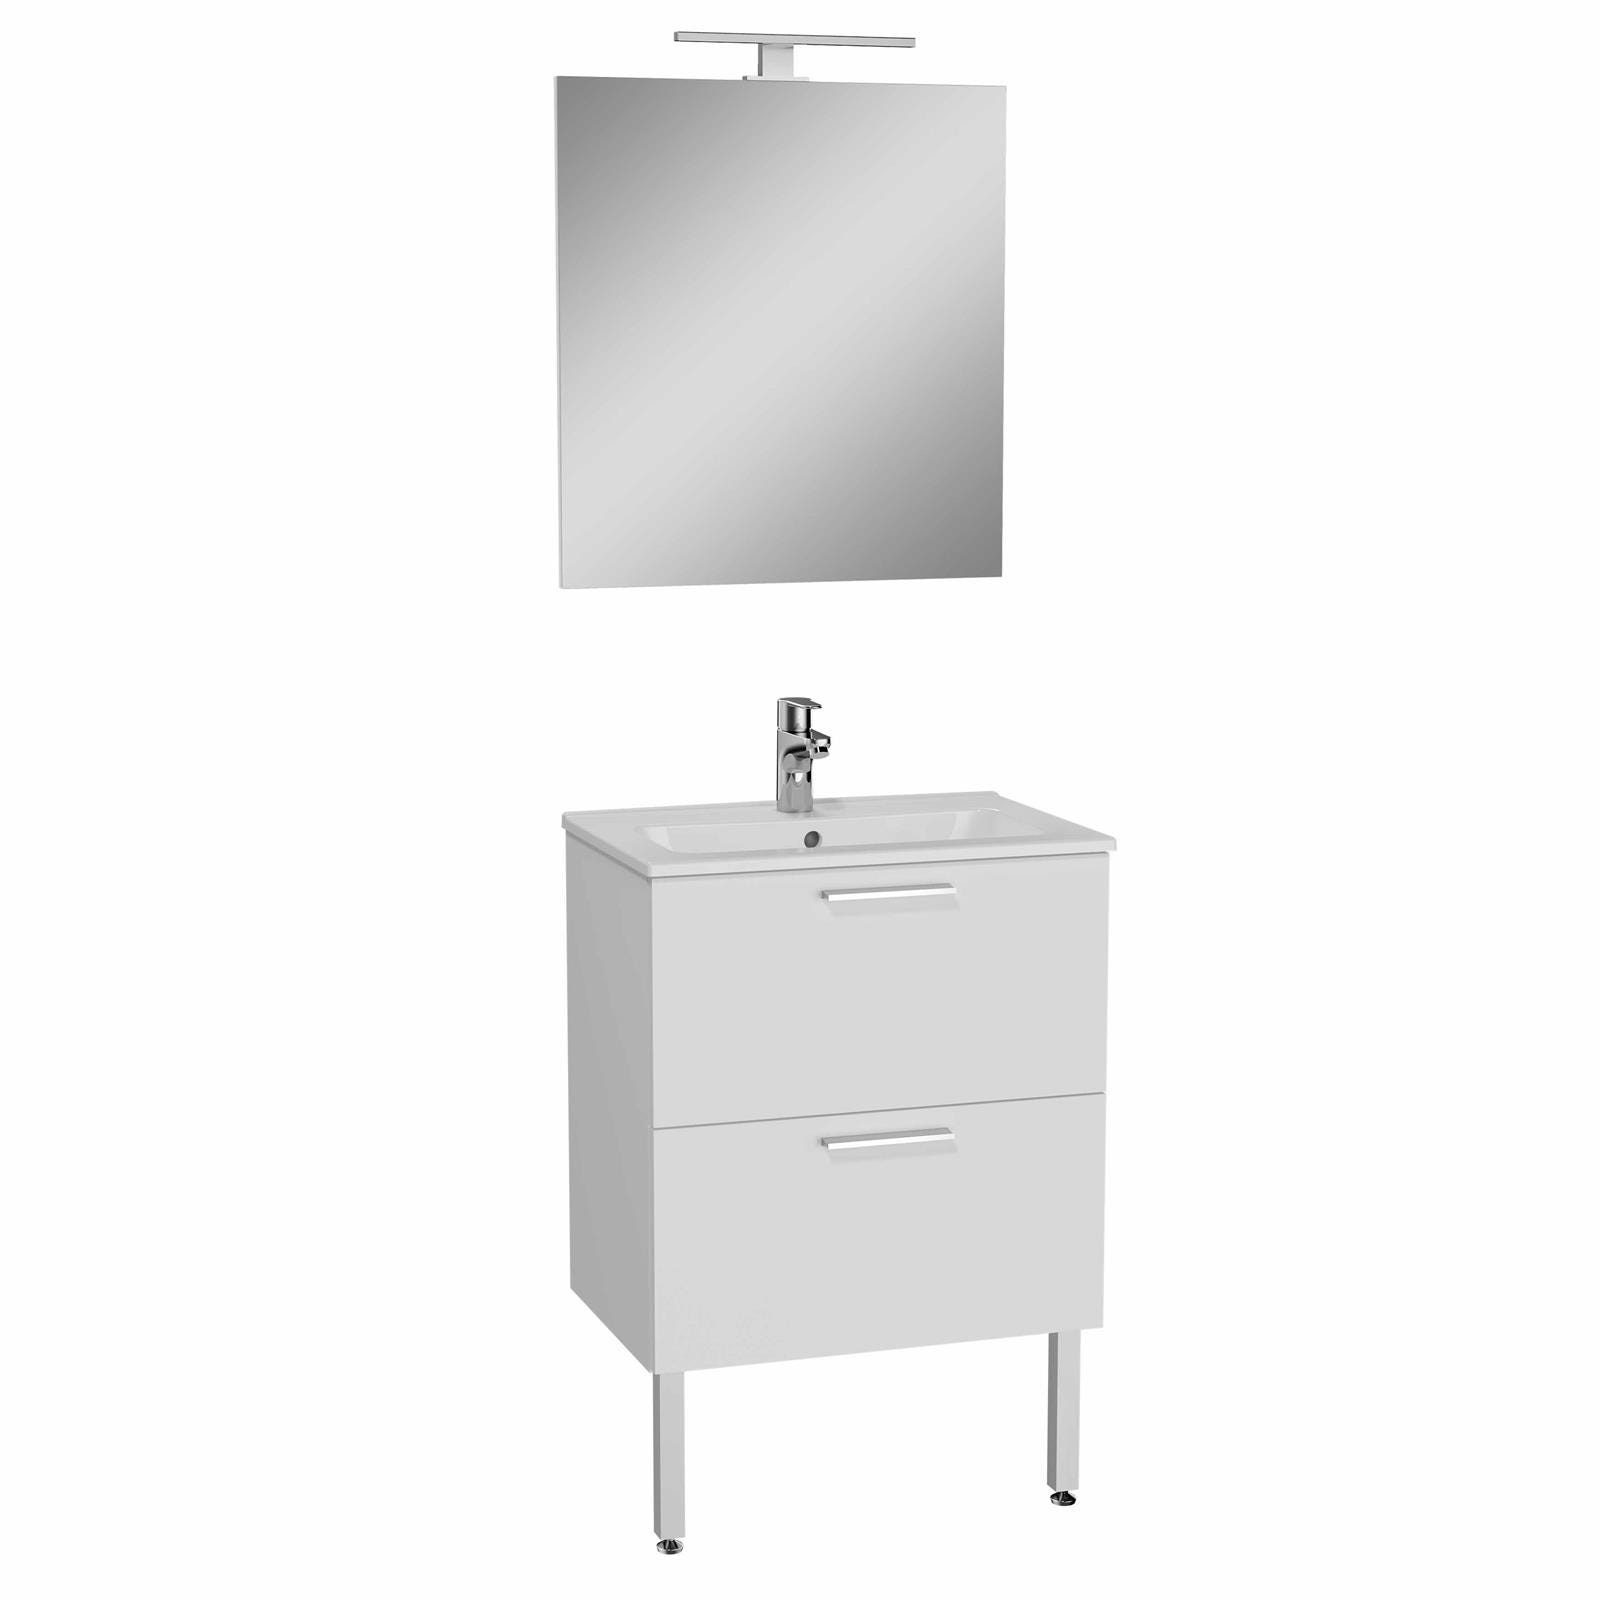 Set de meuble MIA avec plan en céramique et miroir - Coloris meuble: blanc - Finition meuble : brillant- Avec 2 tiroirs - Coloris vasque: blanc - 0